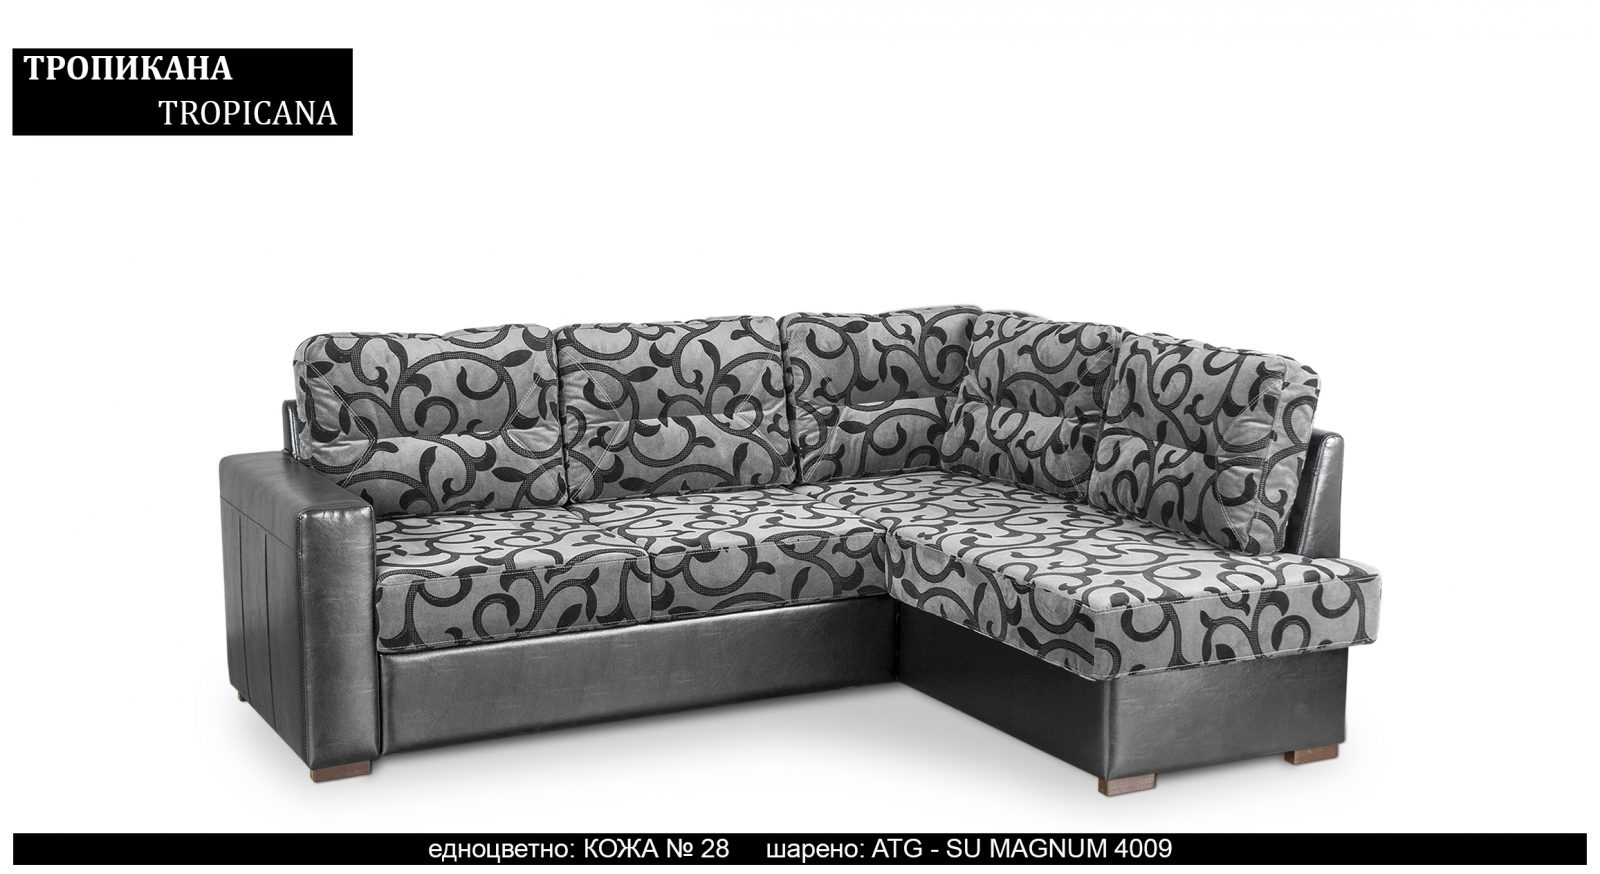 Разтегателен трапезен ъглов диван |“ТРОПИКАНА“| Руди-Ан